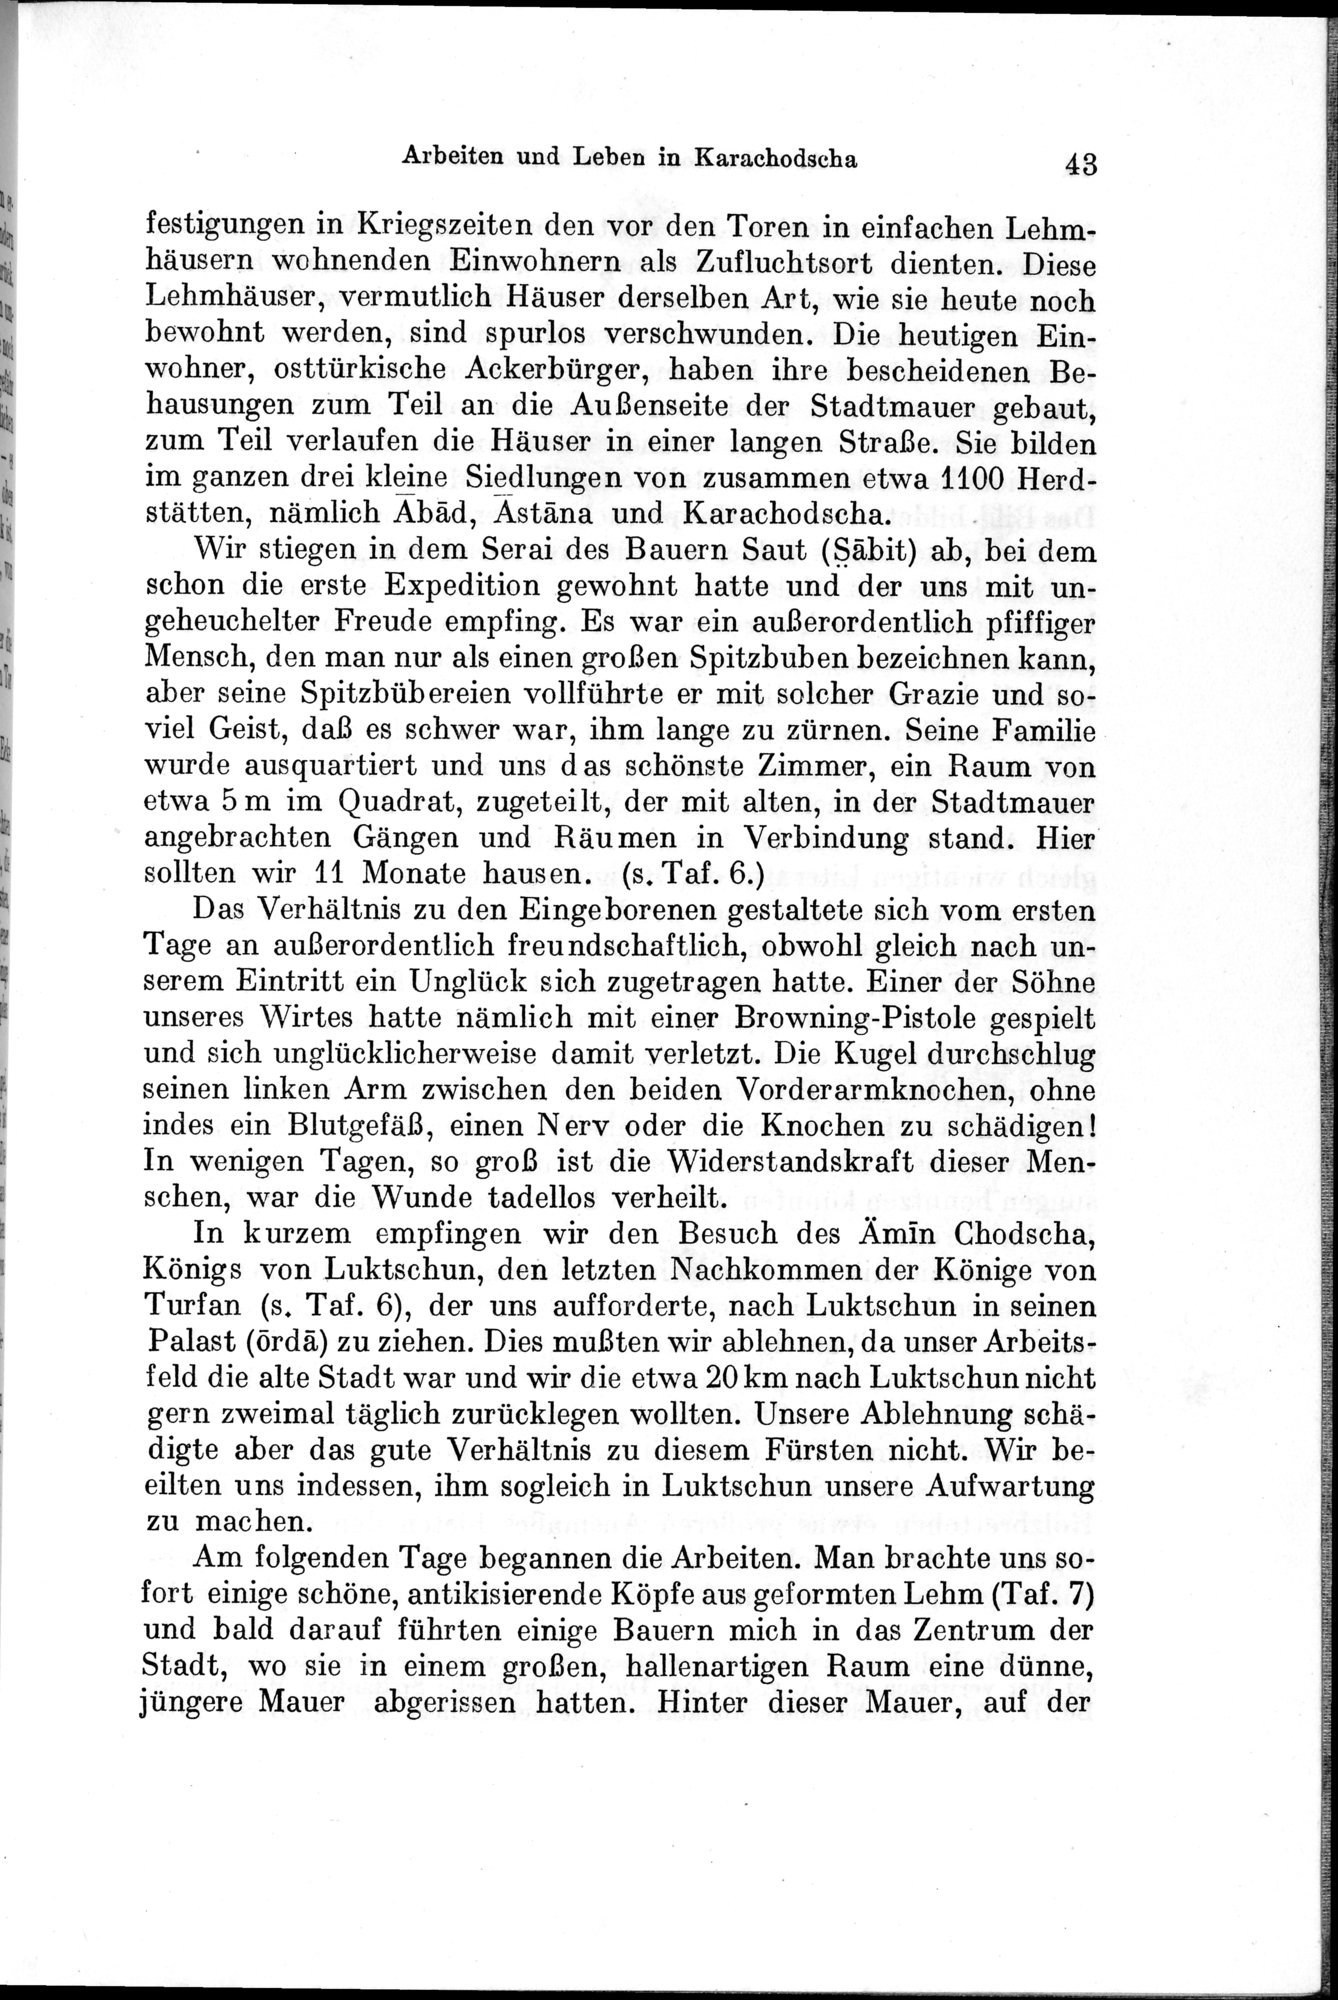 Auf Hellas Spuren in Ostturkistan : vol.1 / Page 69 (Grayscale High Resolution Image)